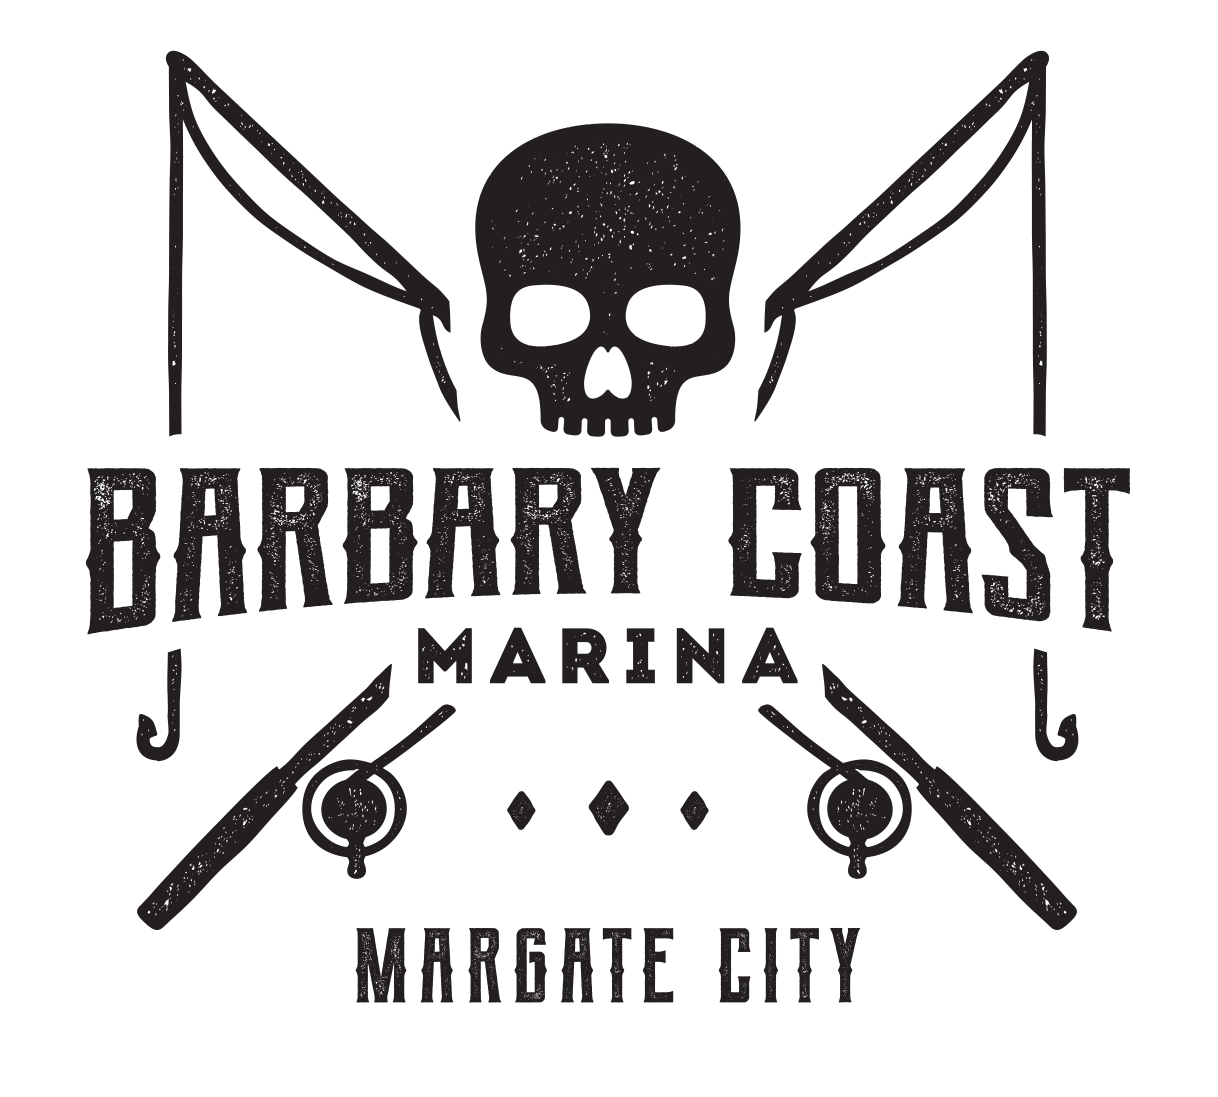 Barbary Coast Marina, Margate, NJ